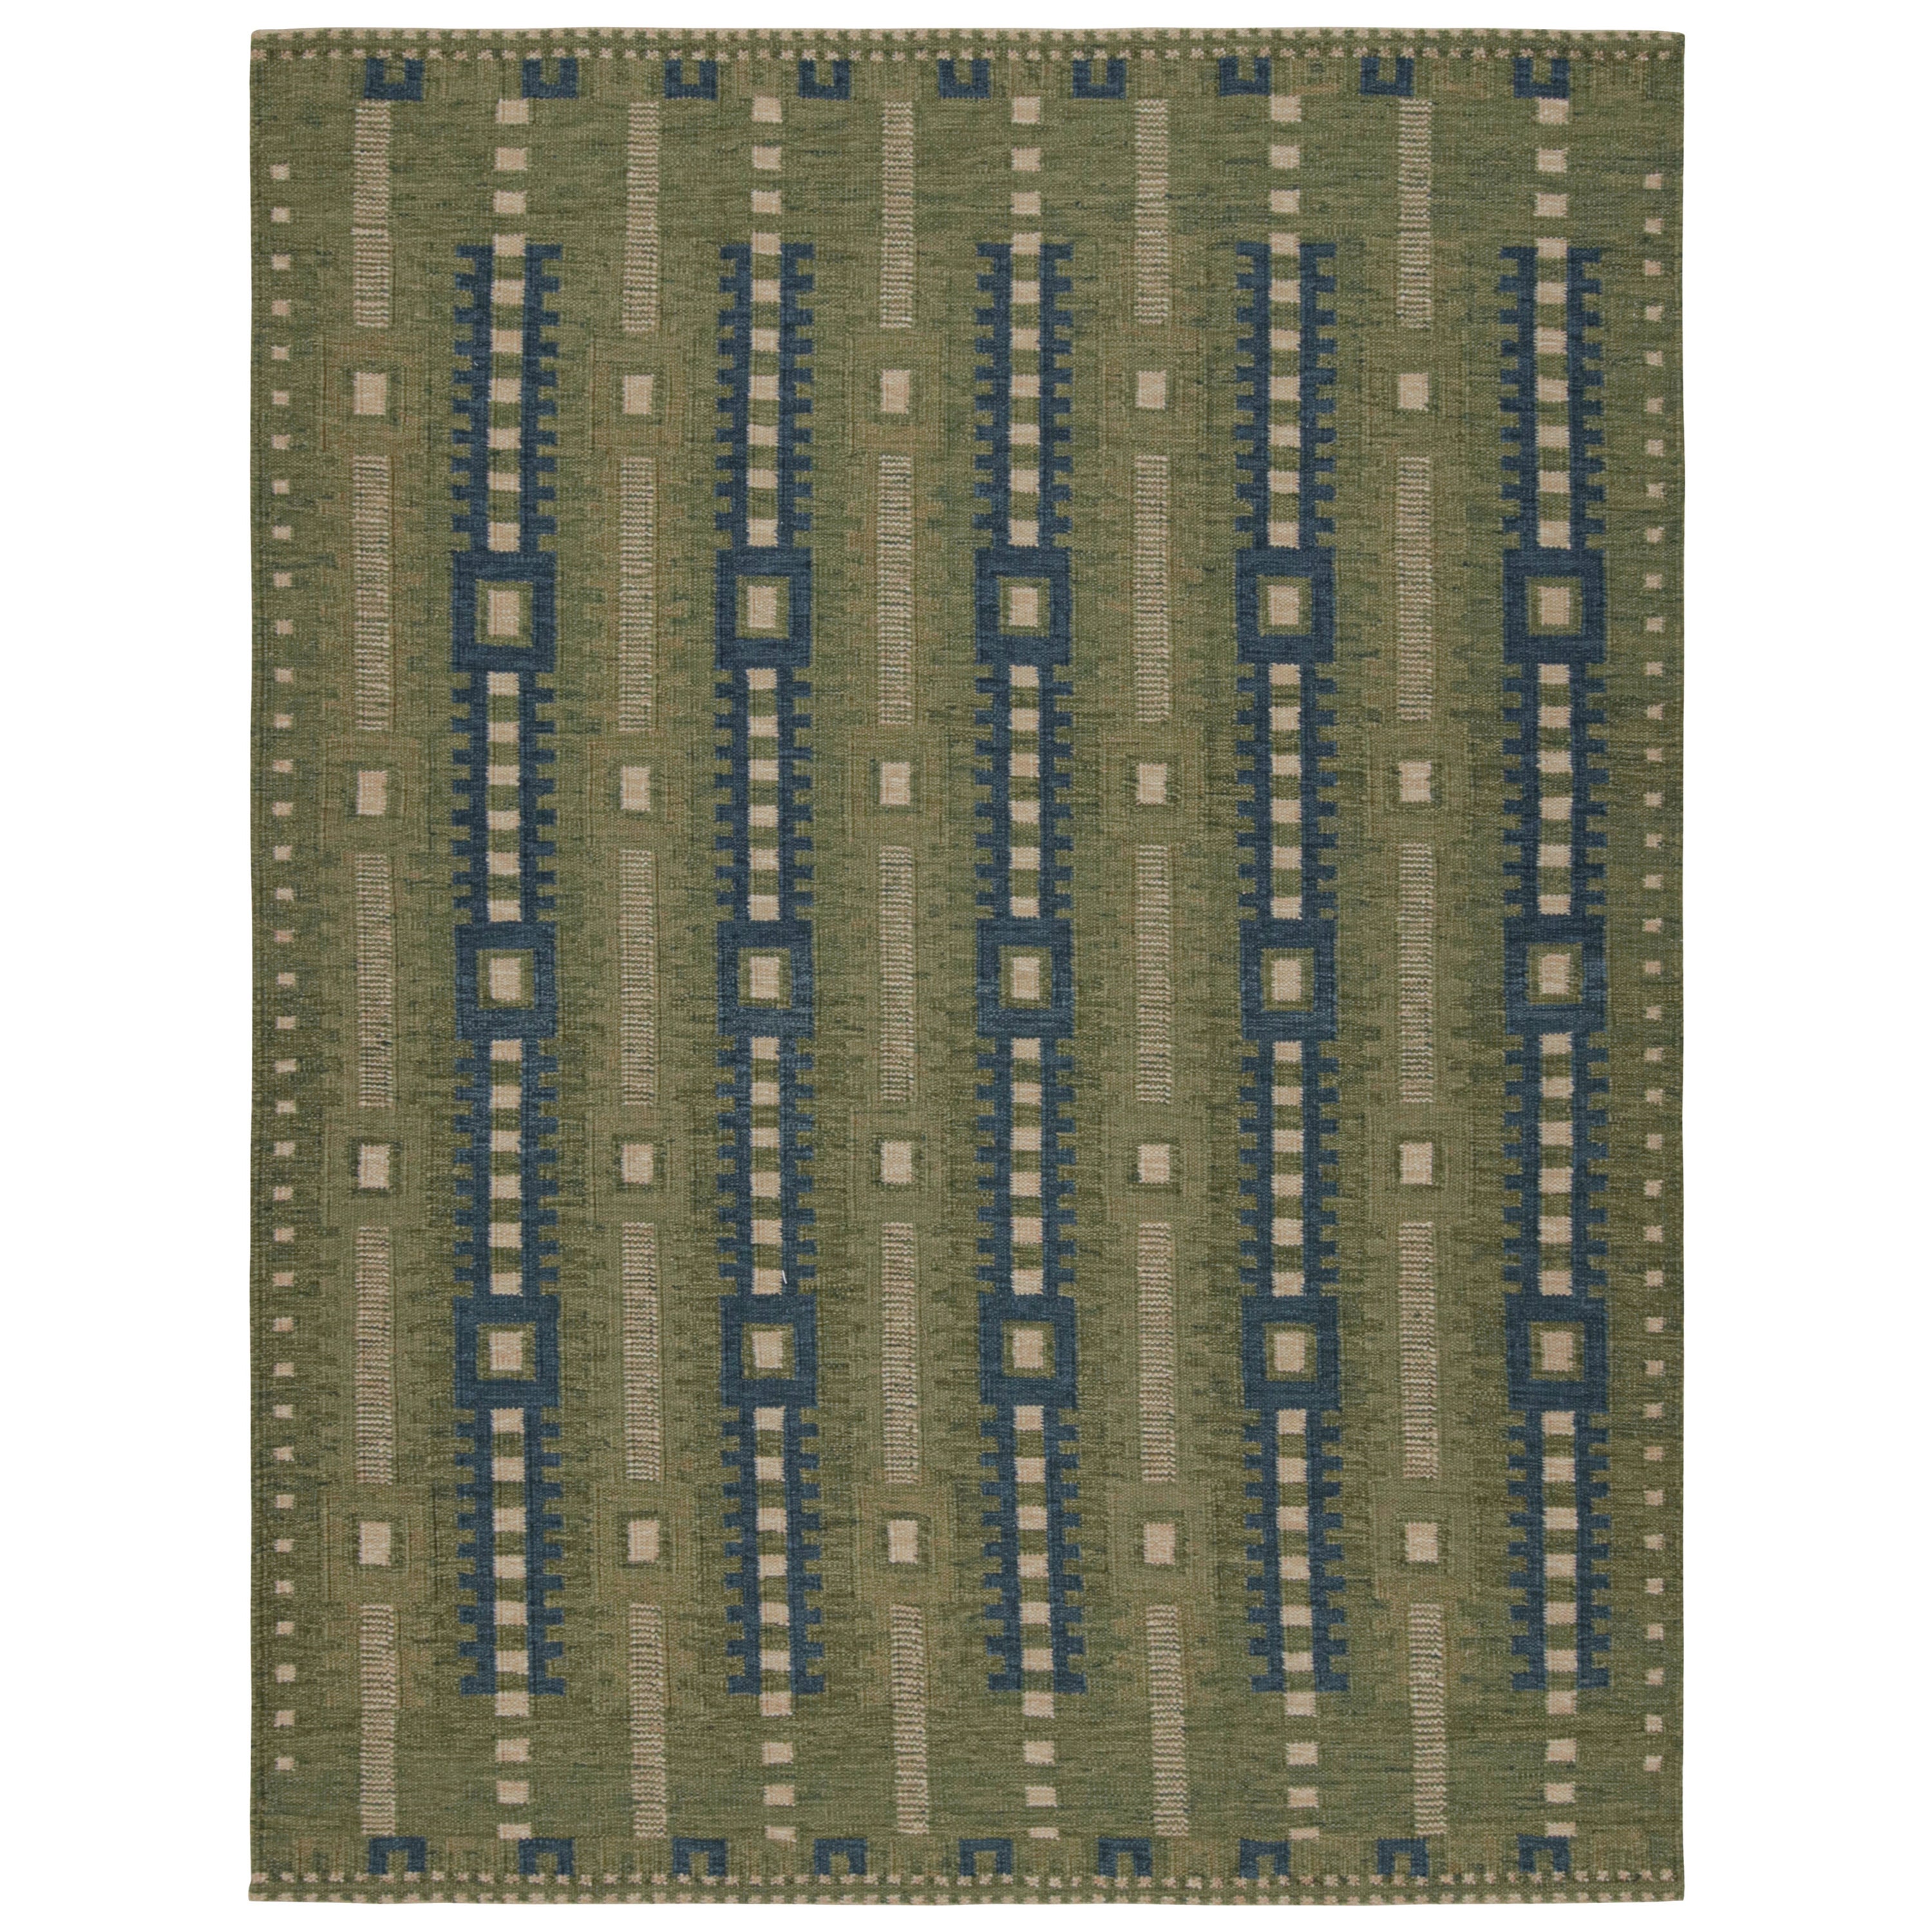 Rug & Kilim's grünes, skandinavisches Teppichdesign mit geometrischen Mustern